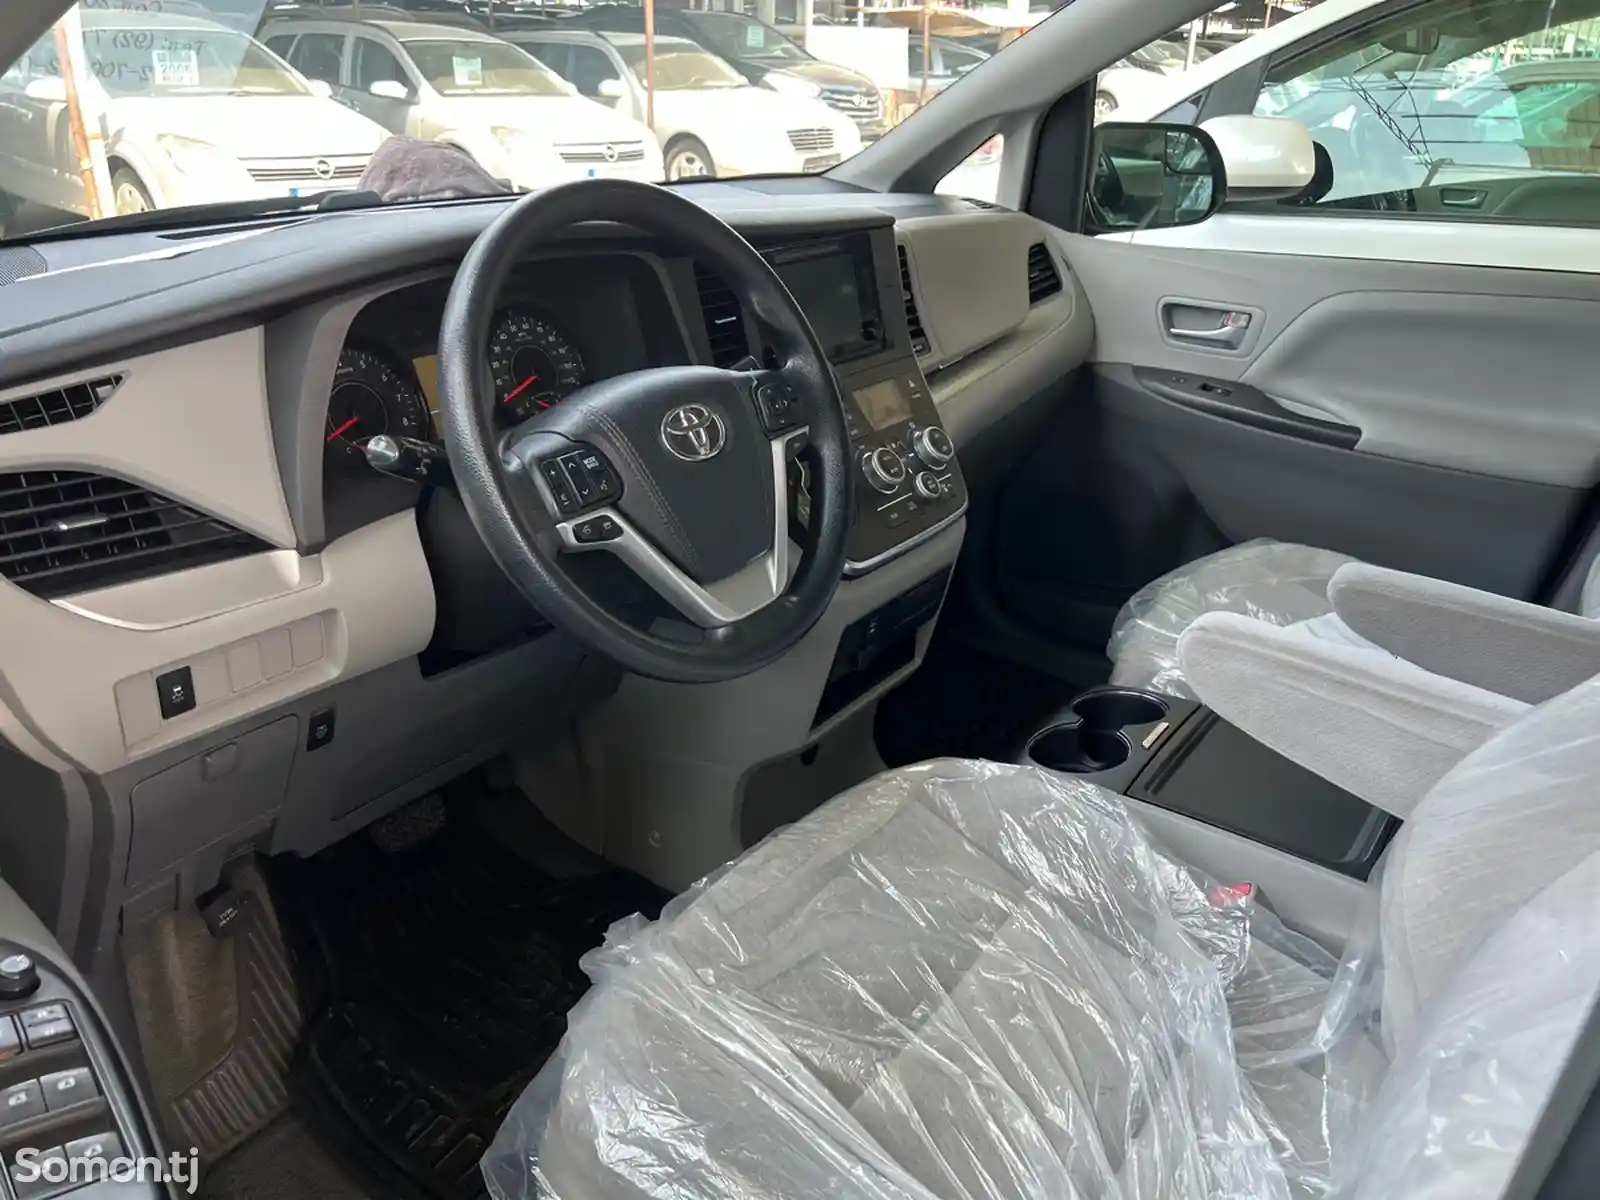 Toyota Sienna, 2016-14